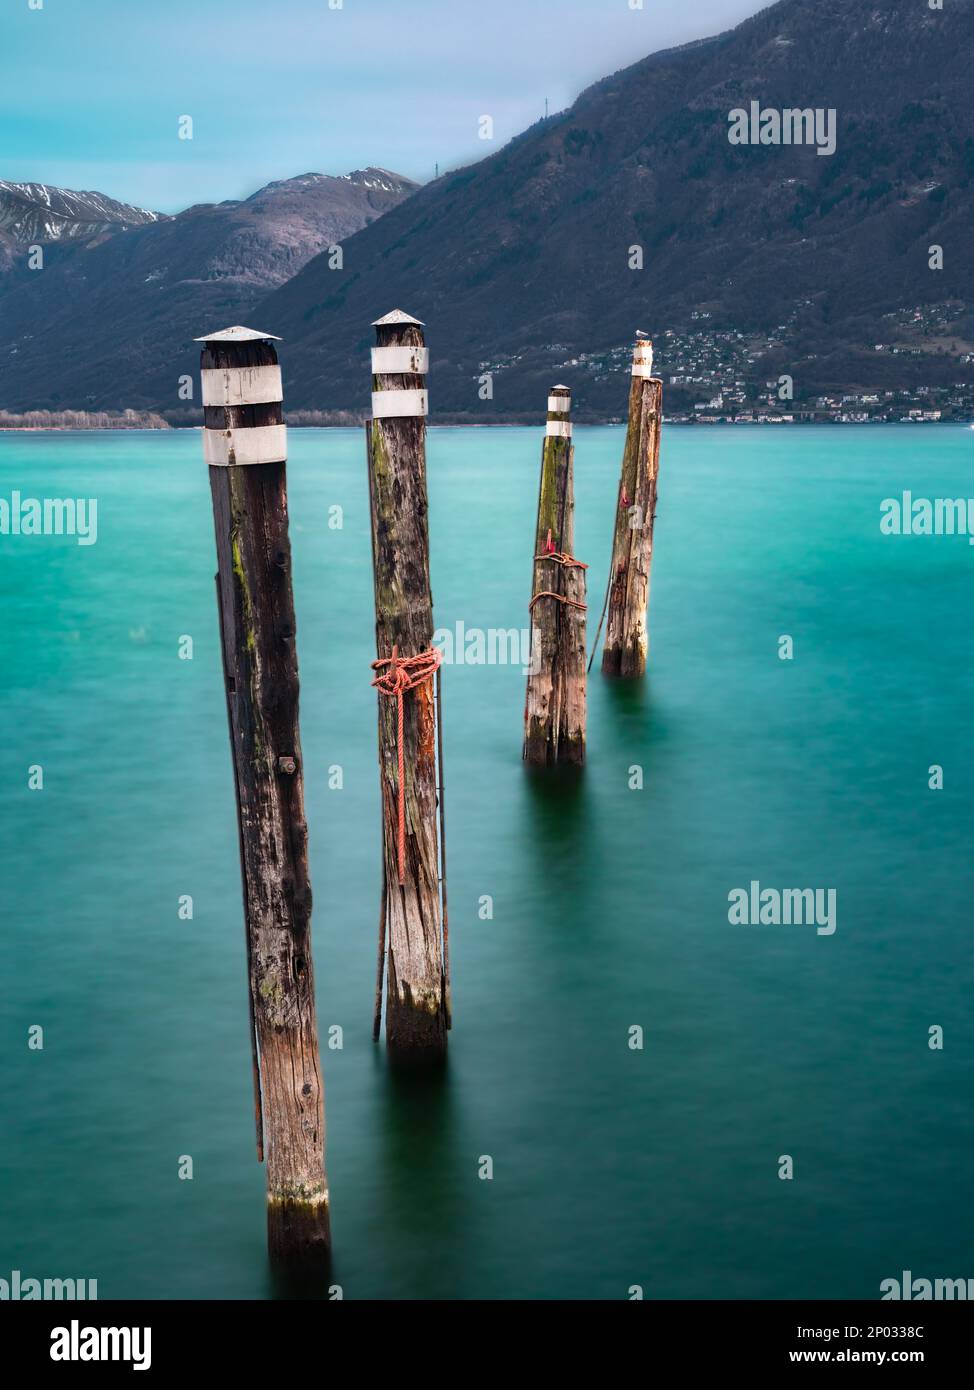 Foto a lunga esposizione di barrette in legno per ormeggio barche sul Lago maggiore a Locarno, Svizzera Foto Stock